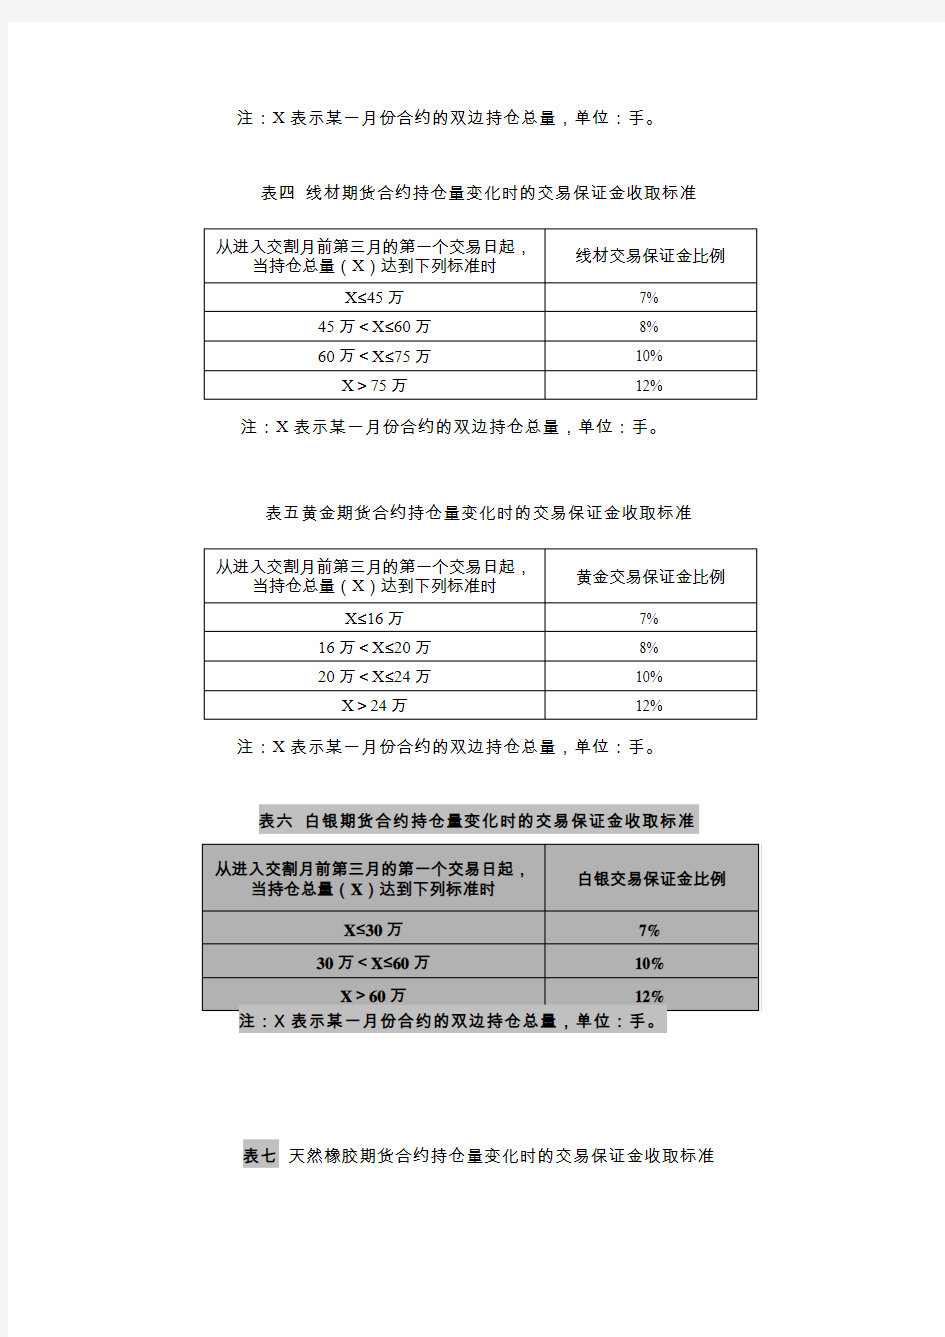 不同阶段的交易保证金收取标准-上海期货交易所